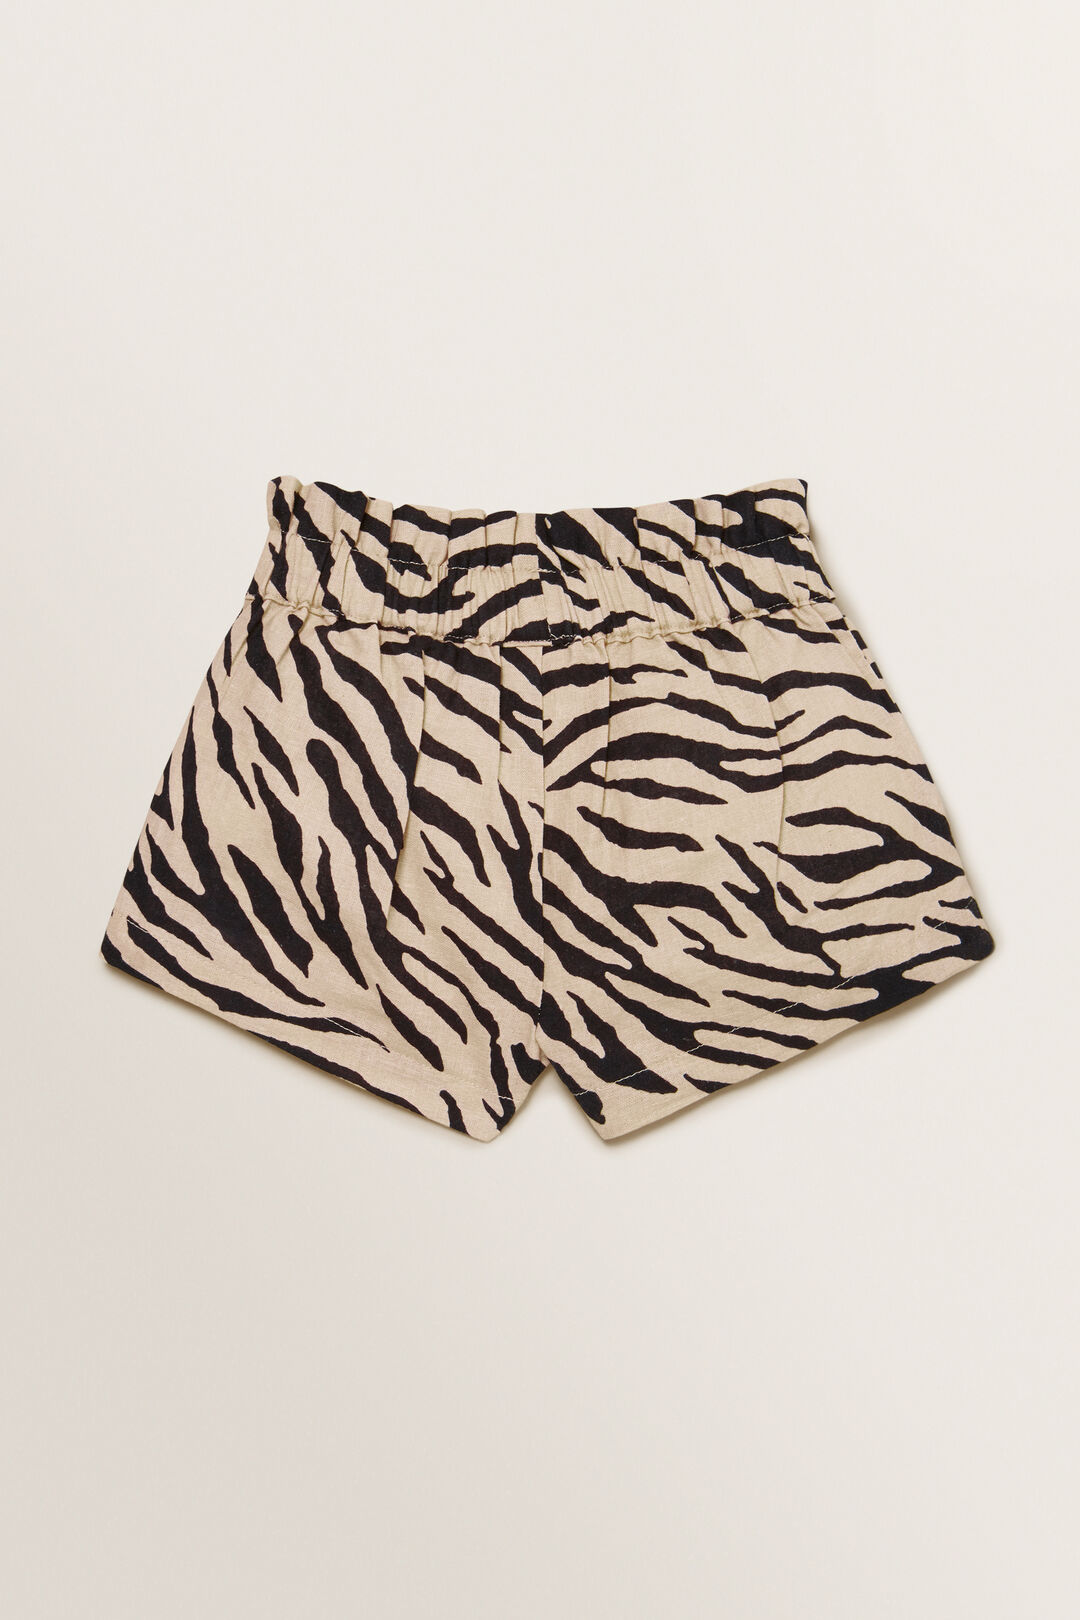 Zebra Shorts    hi-res